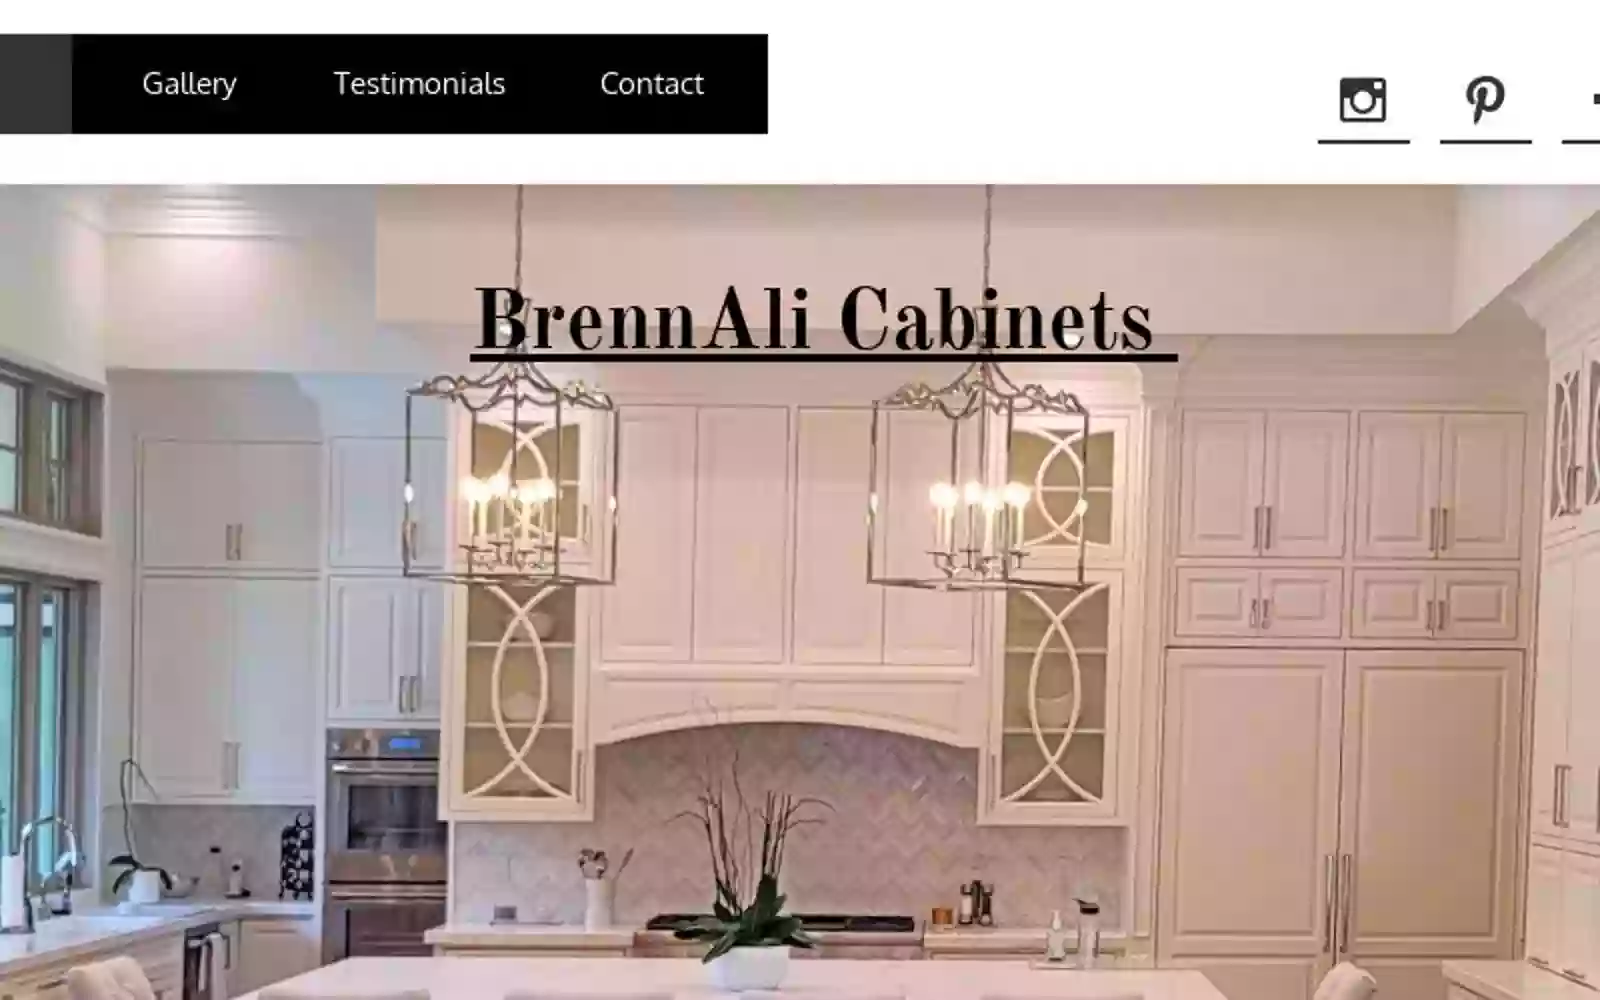 BrennAli Cabinets